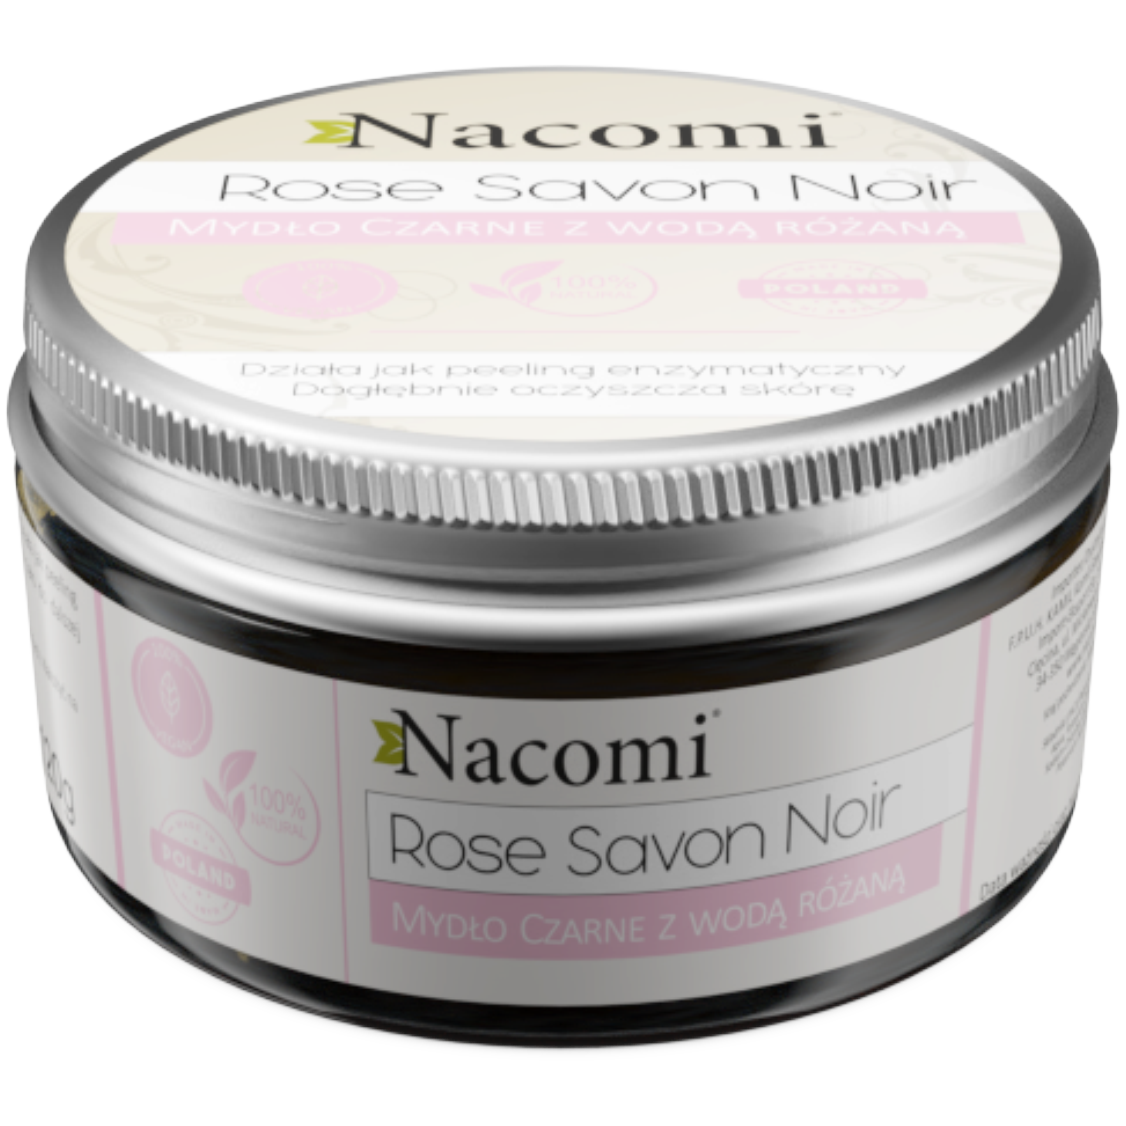 Nacomi Rose Savon Noir mydło czarne z wodą różaną, 125 g | hebe.pl